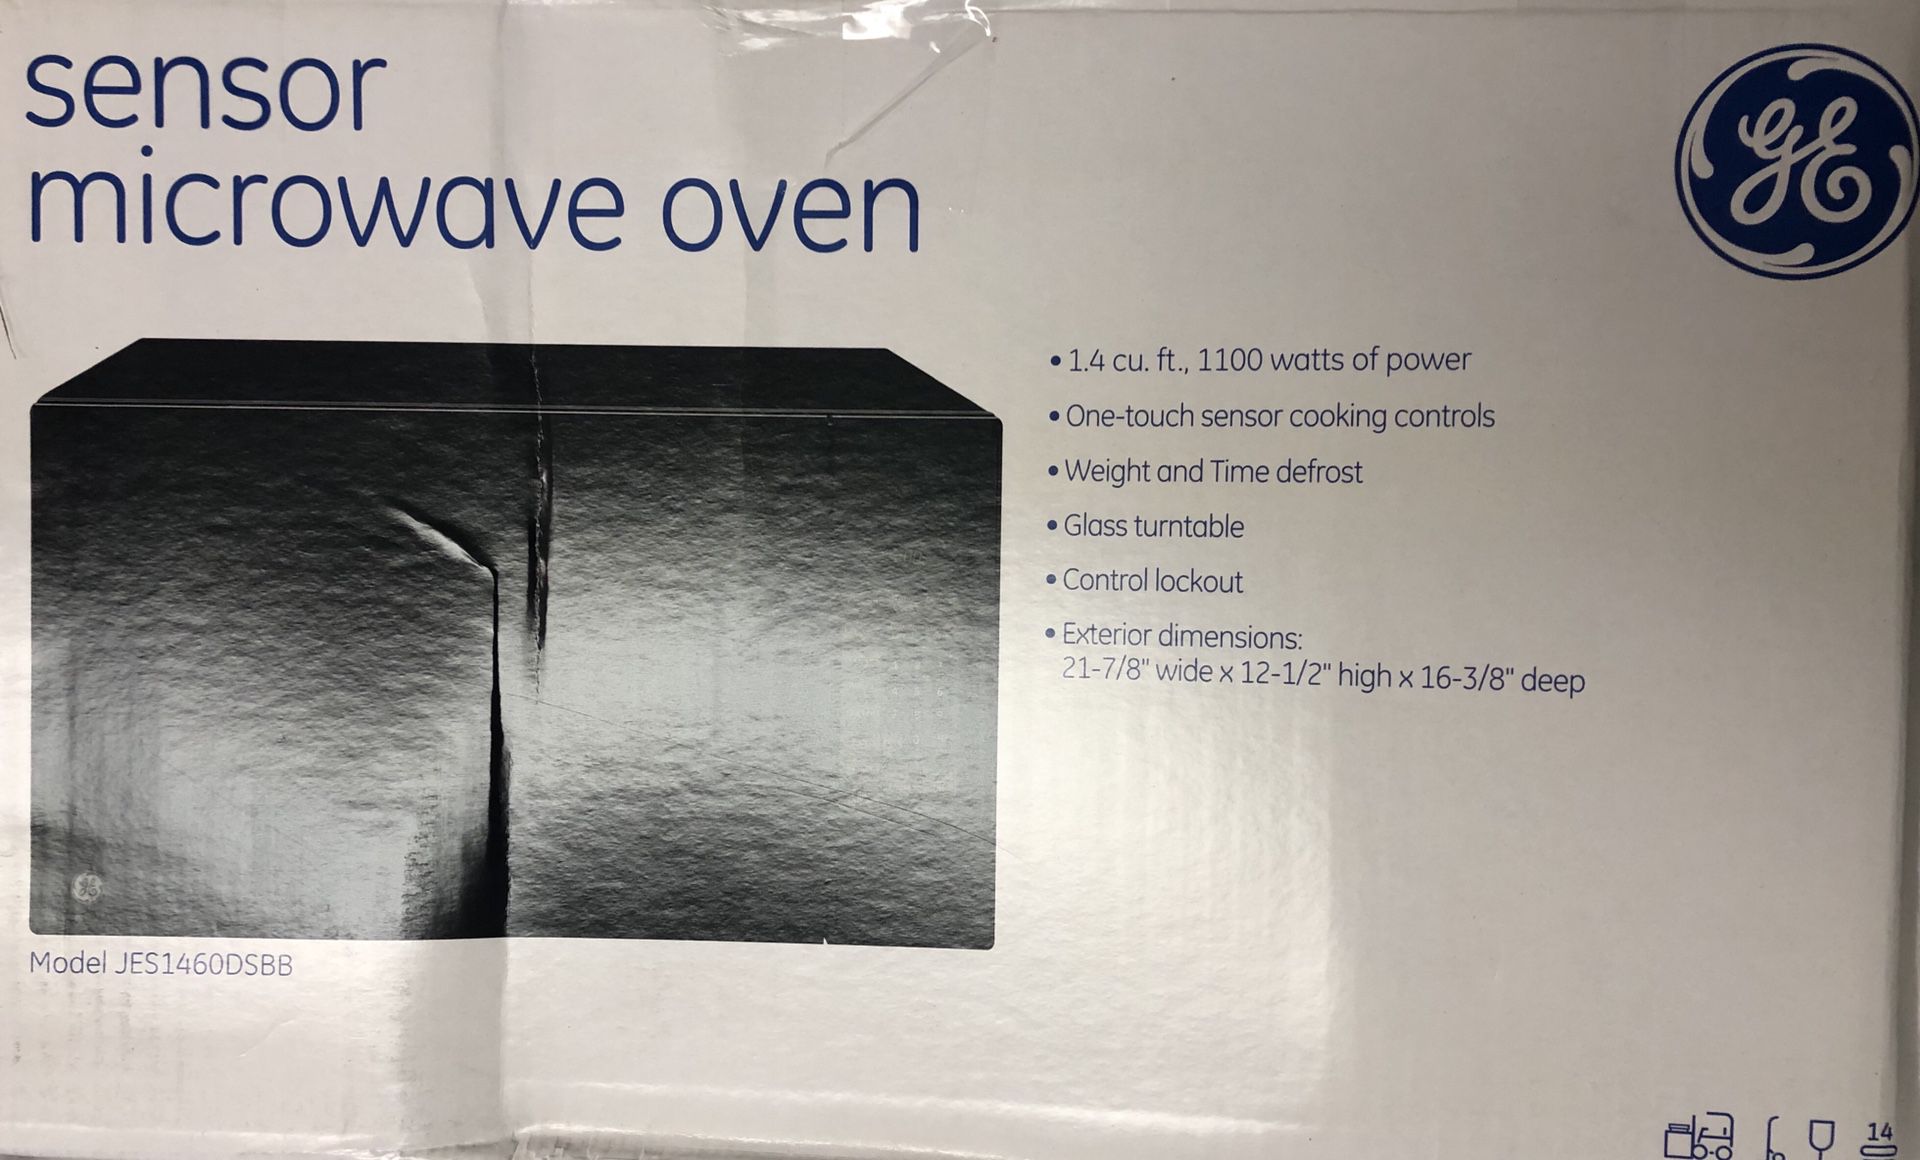 GE sensor microwave oven